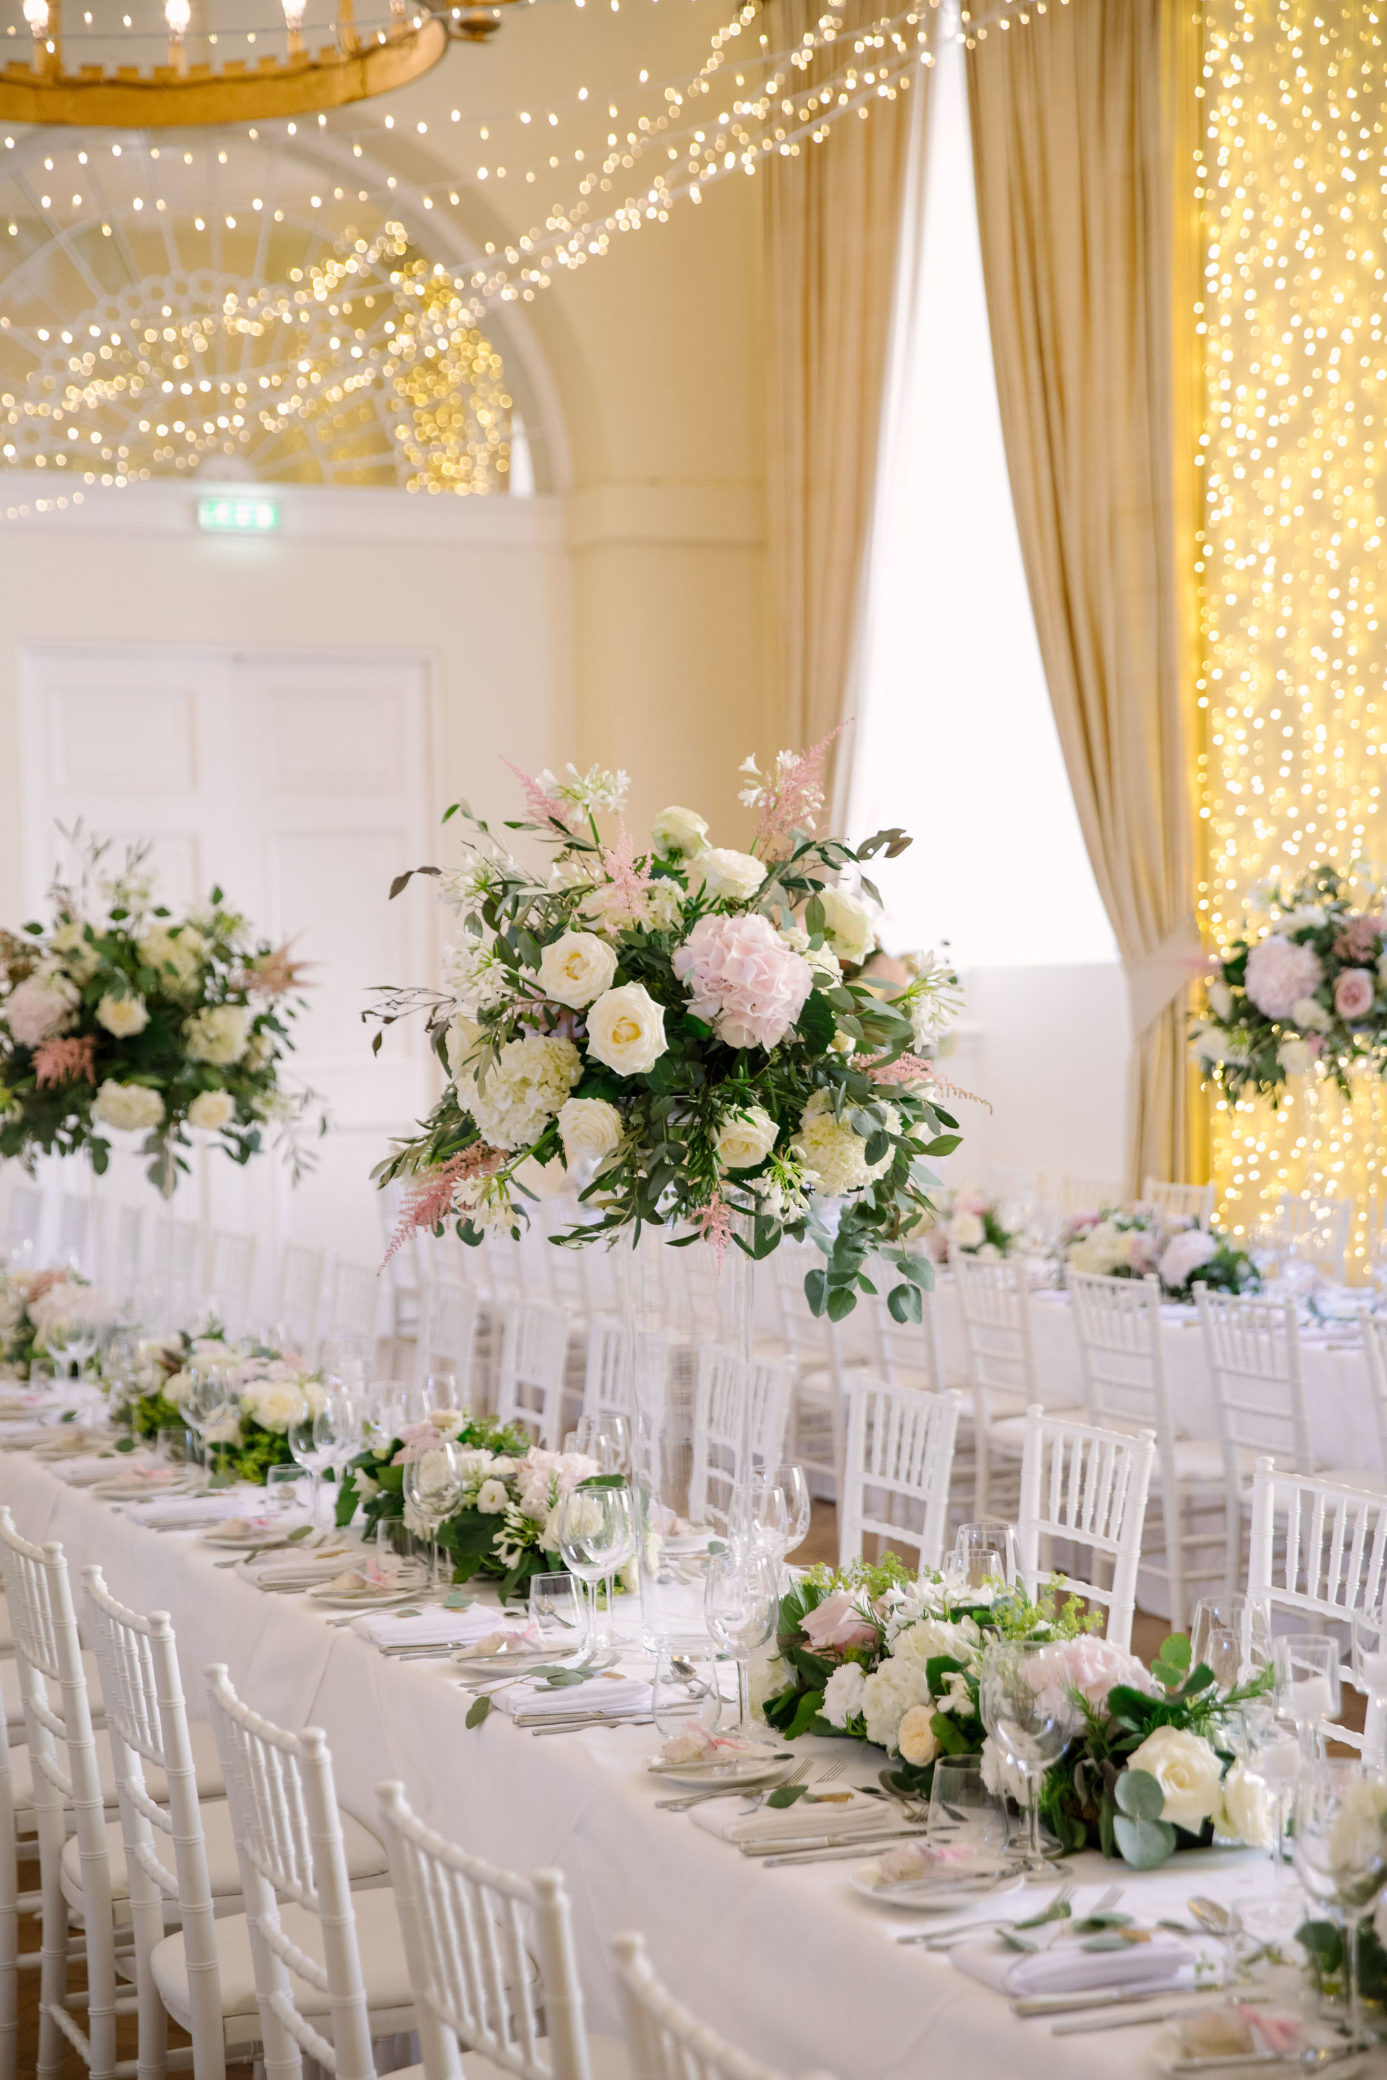 Luxurious wedding banquet at Farnham Castle in Surrey